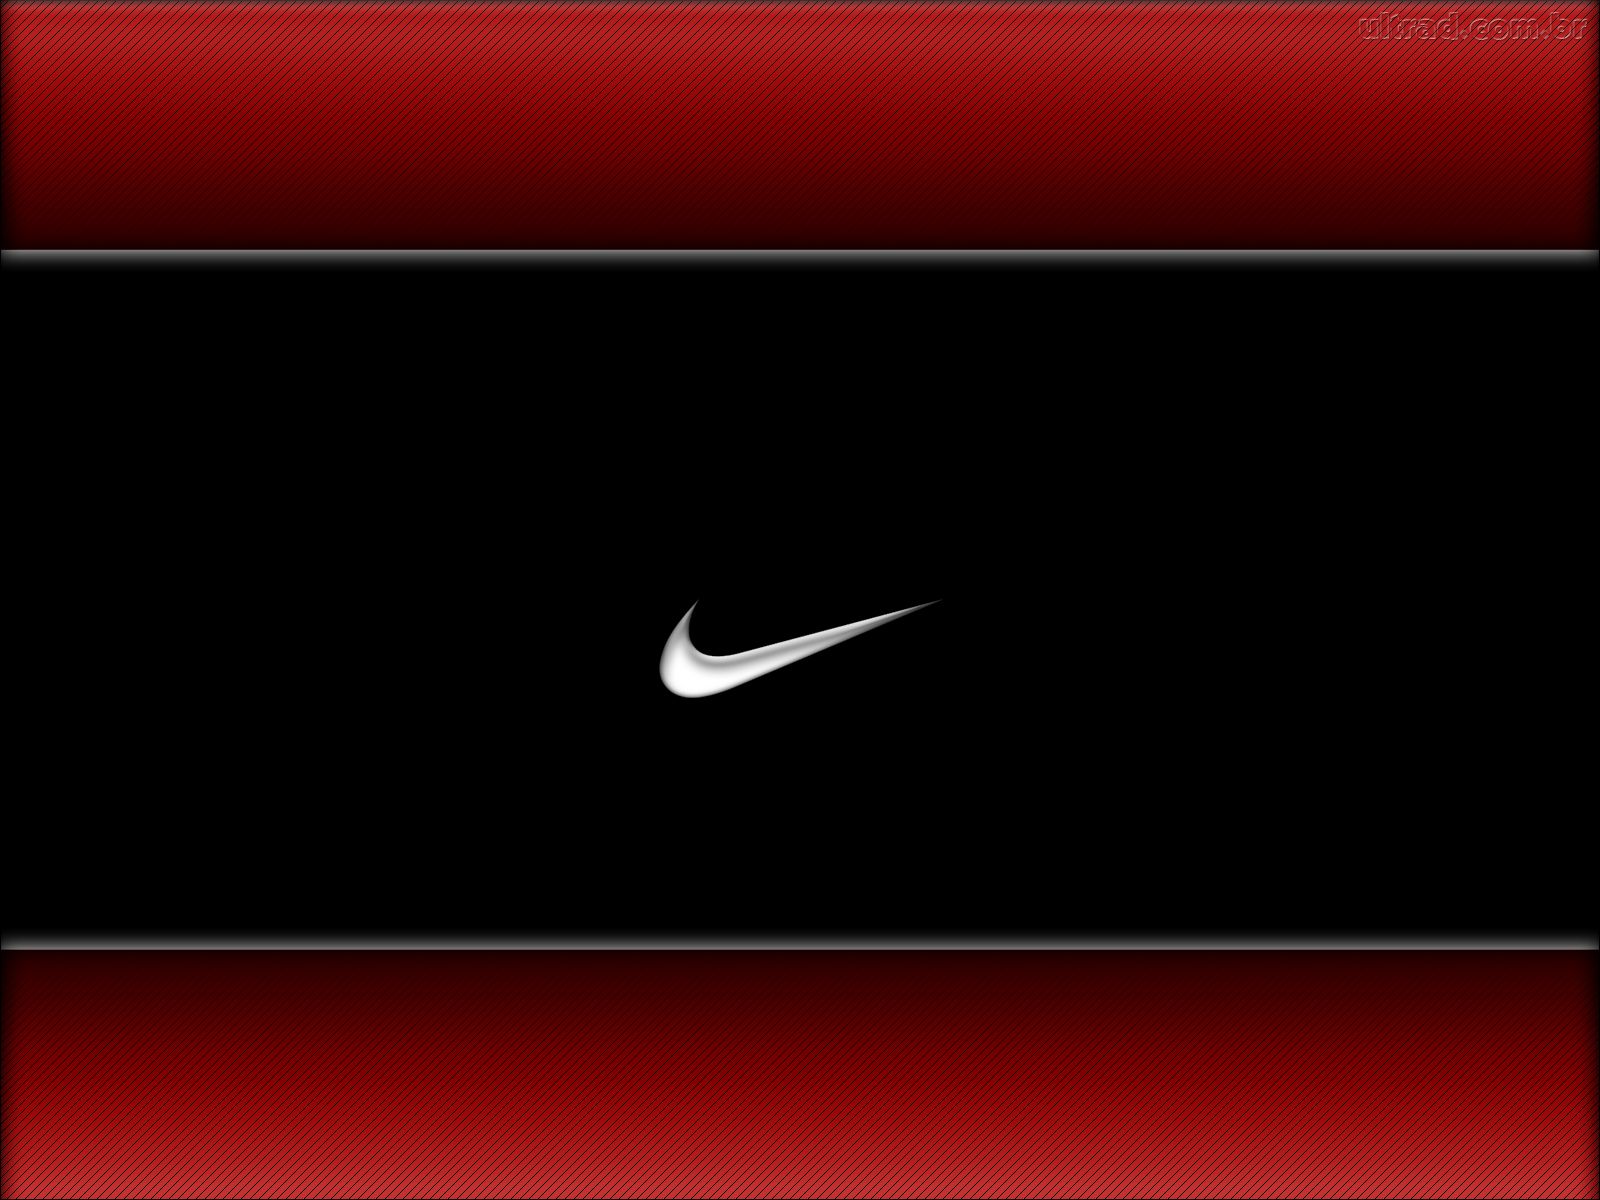 Bạn đang tìm kiếm một hình nền Nike tuyệt đẹp để trang trí cho thiết bị của mình? Hãy đến với ảnh miễn phí Nike trên trang web chúng tôi. Chúng là những lựa chọn tuyệt vời để thể hiện tinh thần thể thao, đồng thời cũng mang lại sự sáng tạo và ấn tượng đặc biệt.